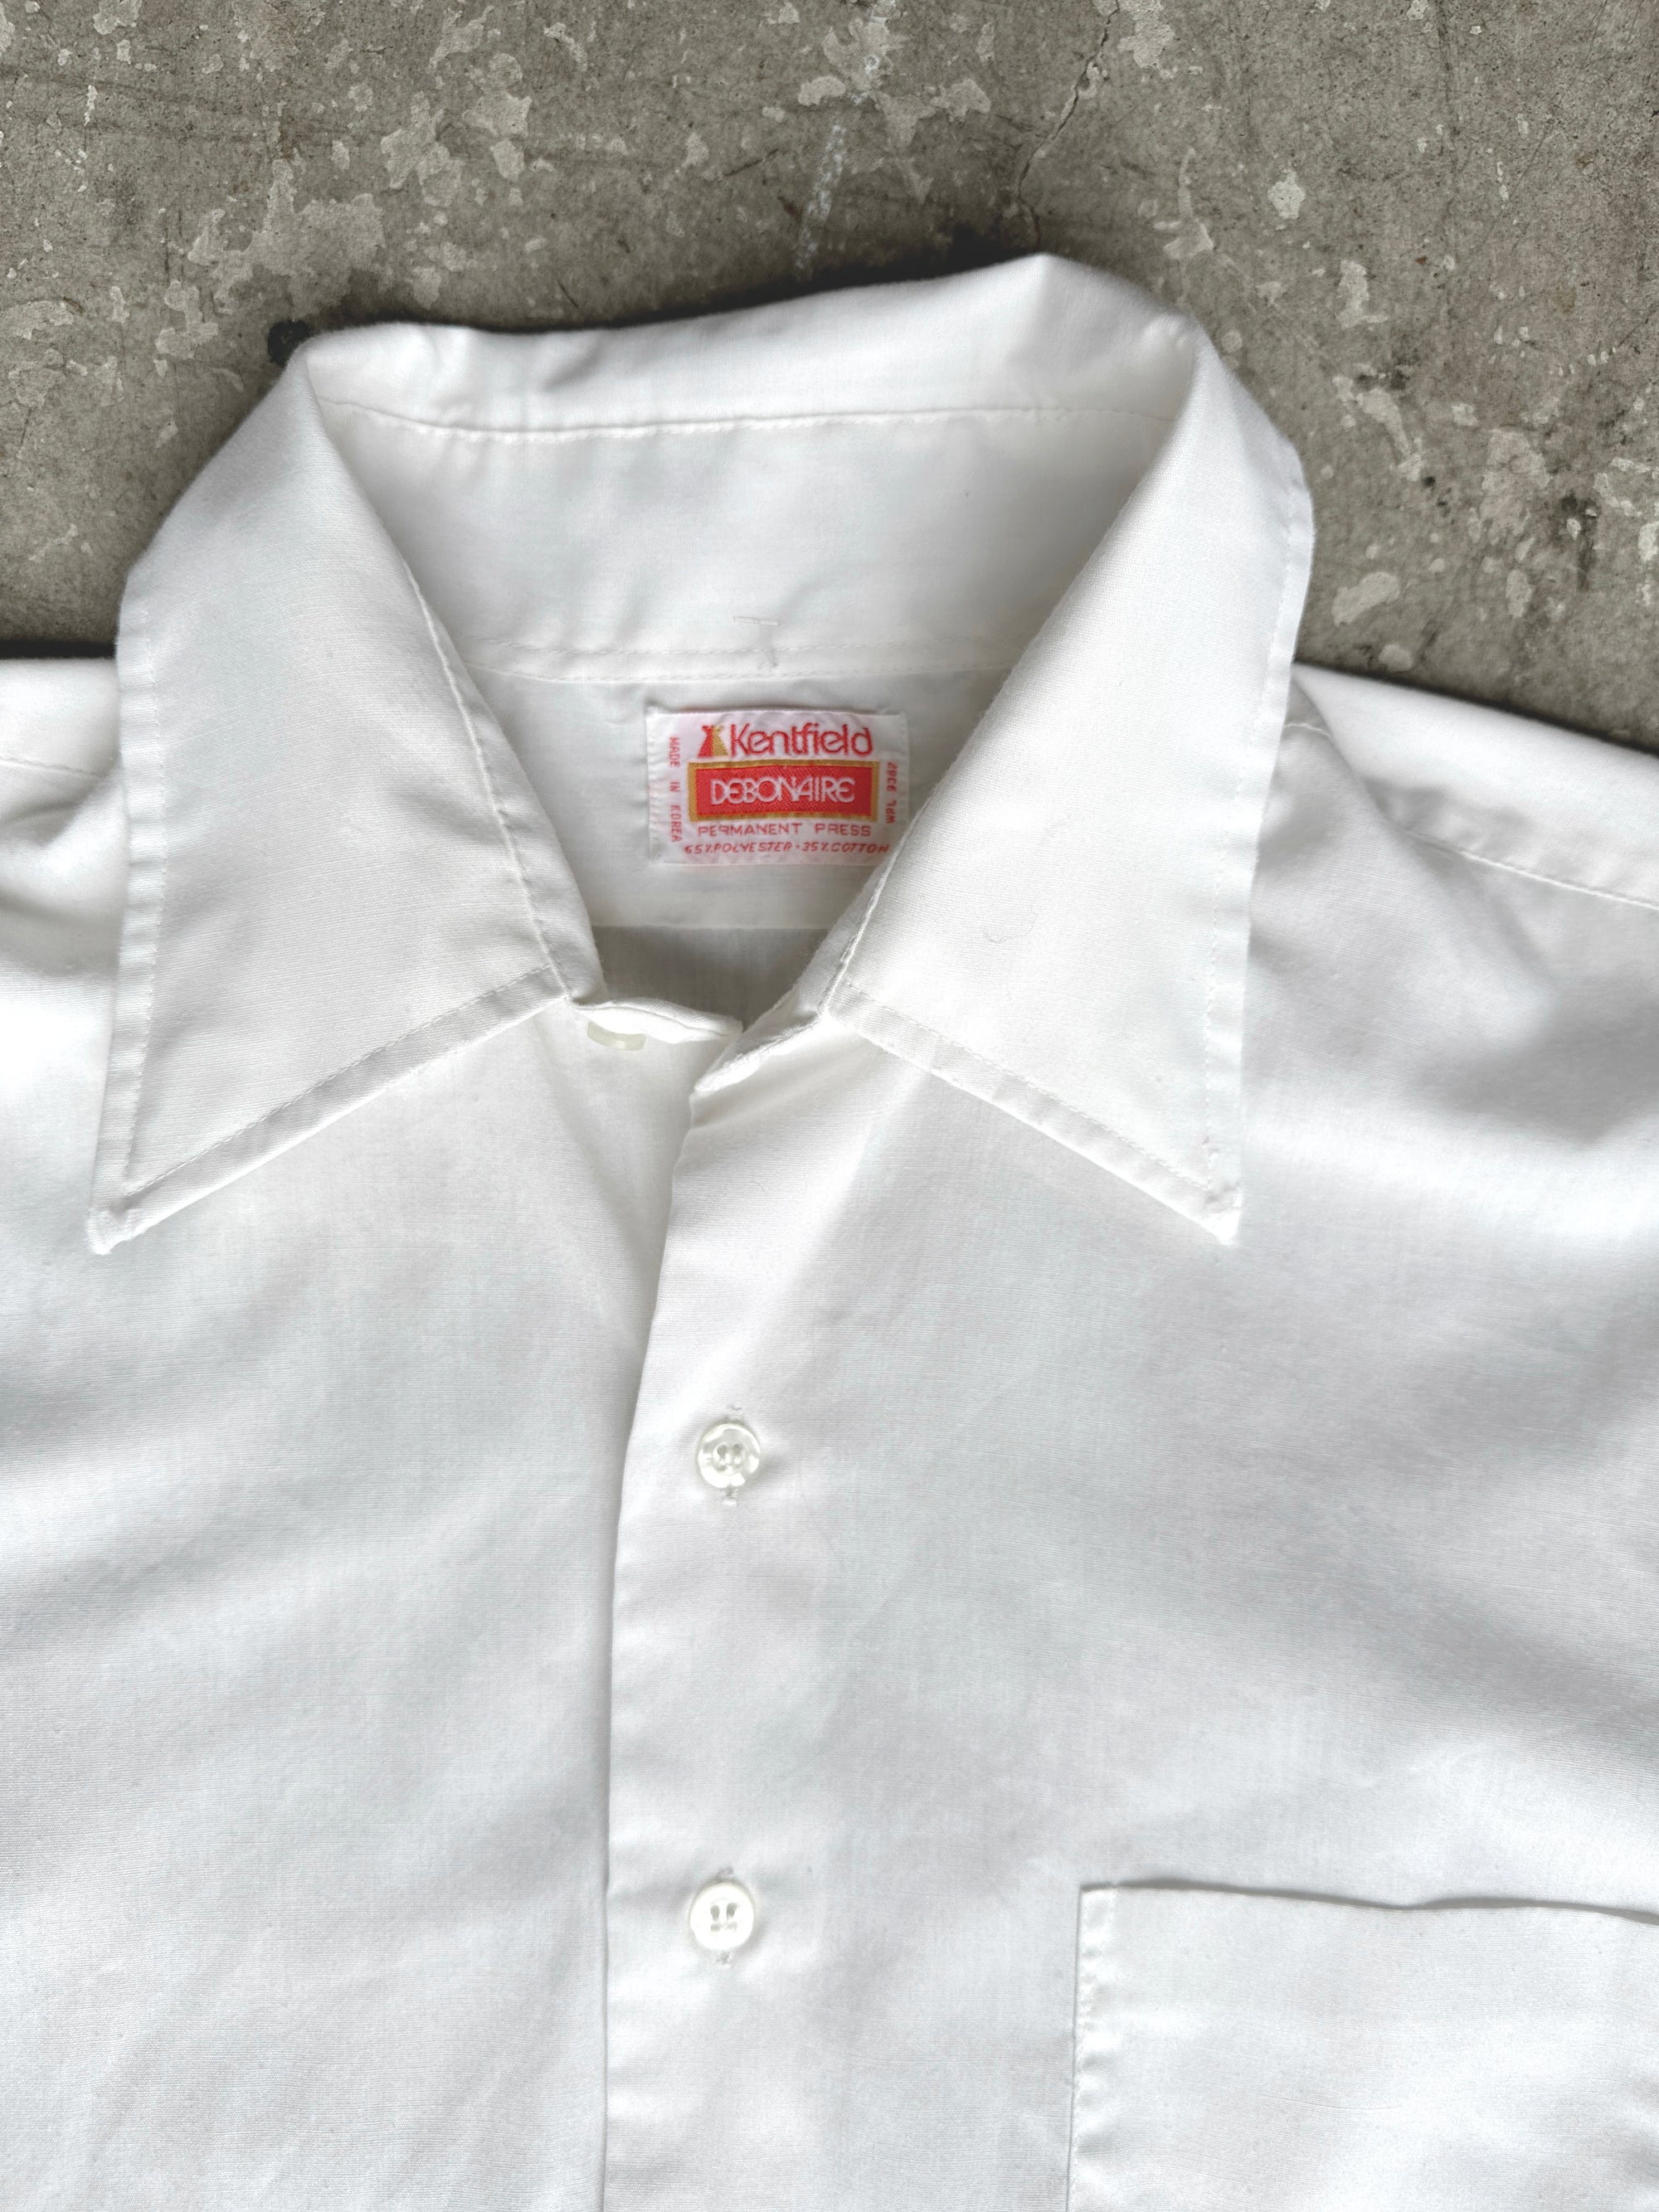 1970s White Kentfield Button Down Dress Shirt